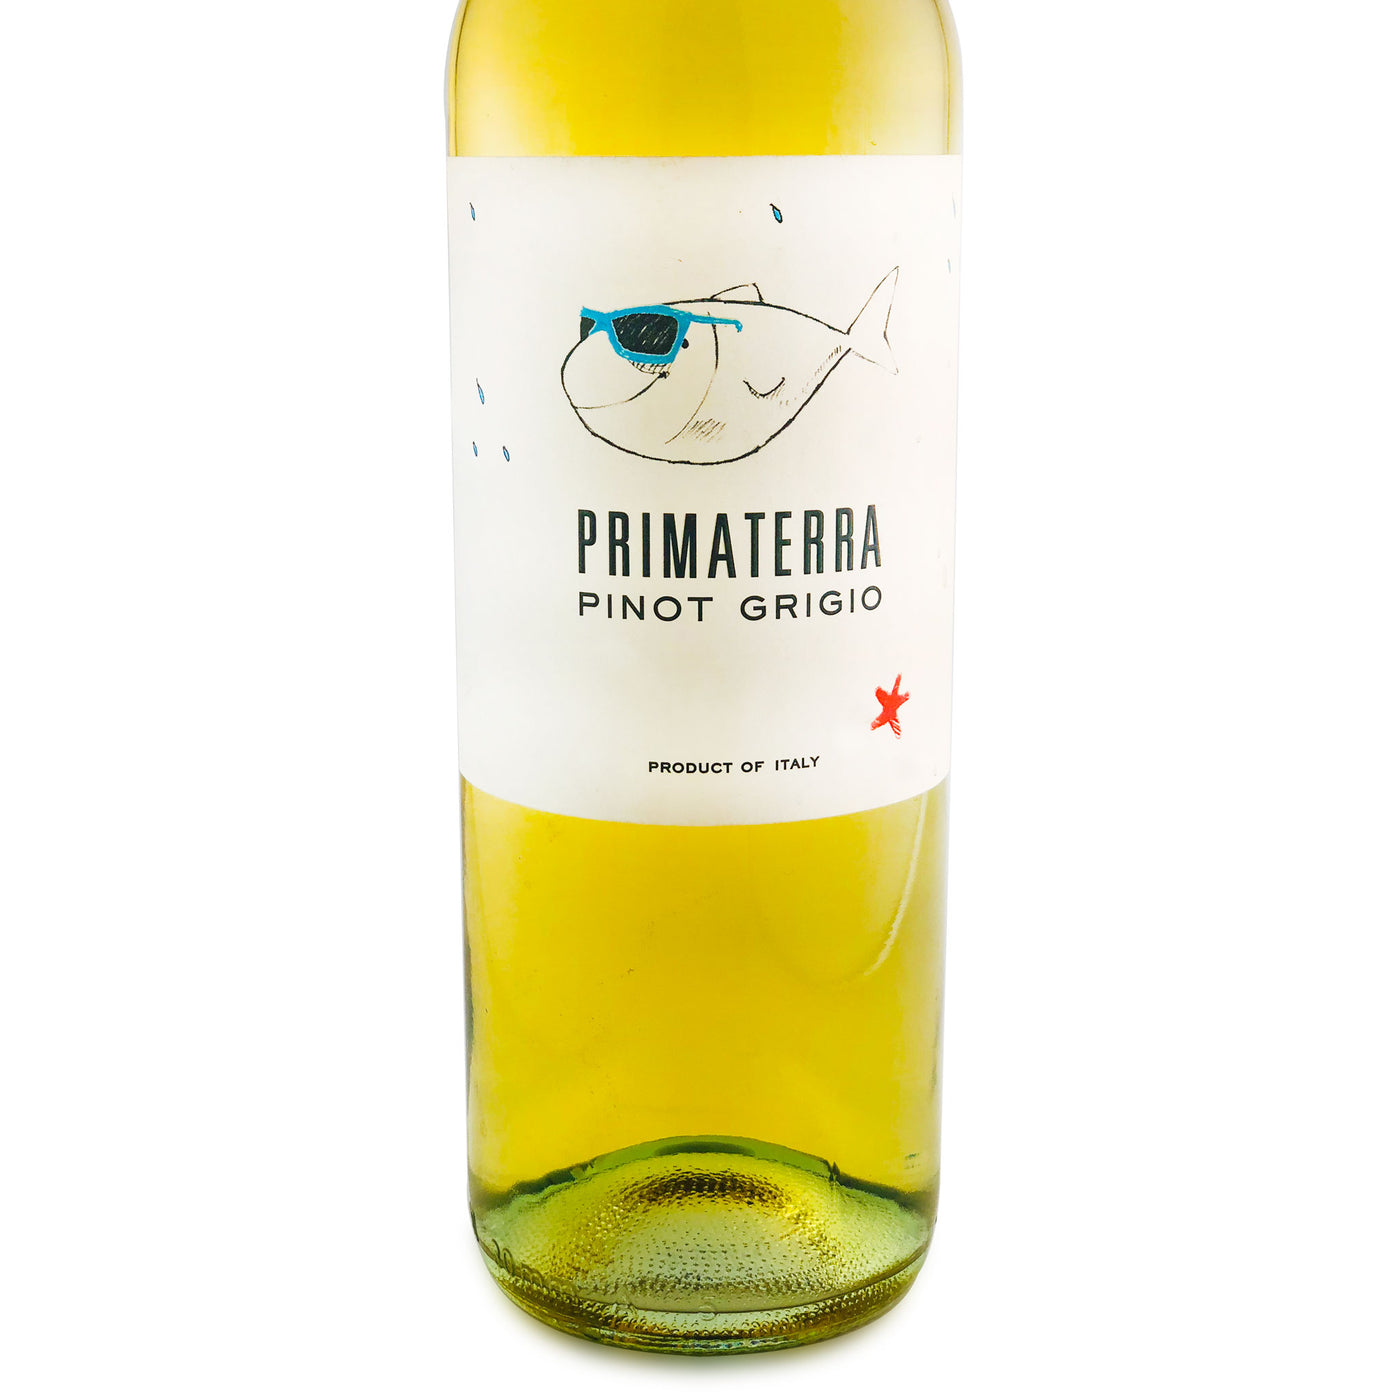 Primaterra Pinot Grigio 2014